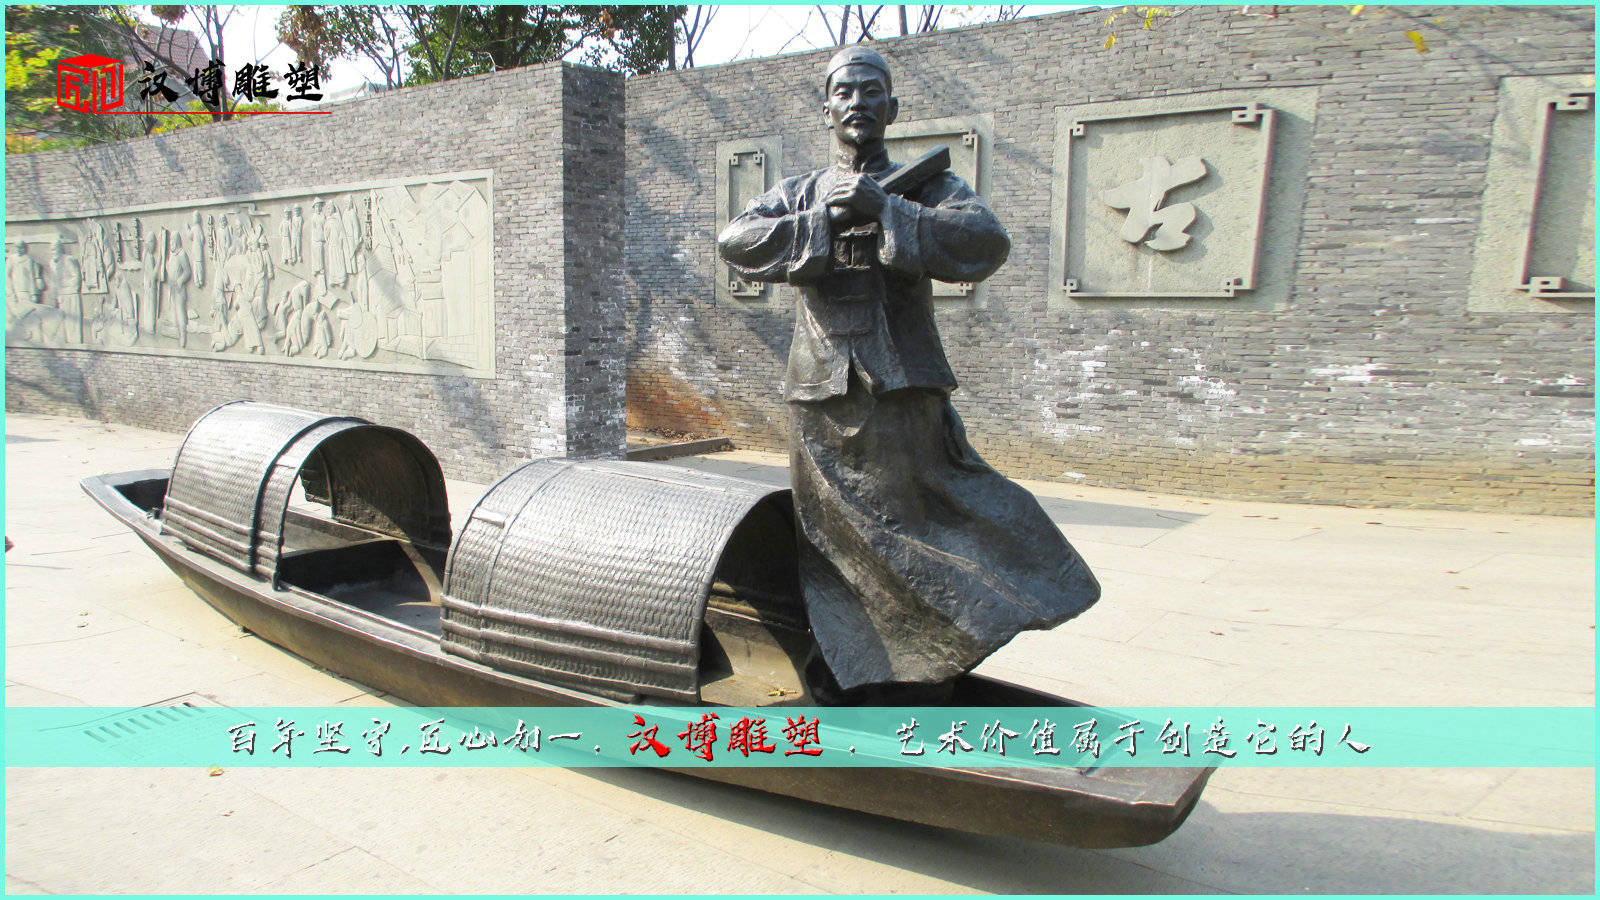 茶马古道主题文化雕塑——茶马古道起源于唐宋时期的“茶马互市”。